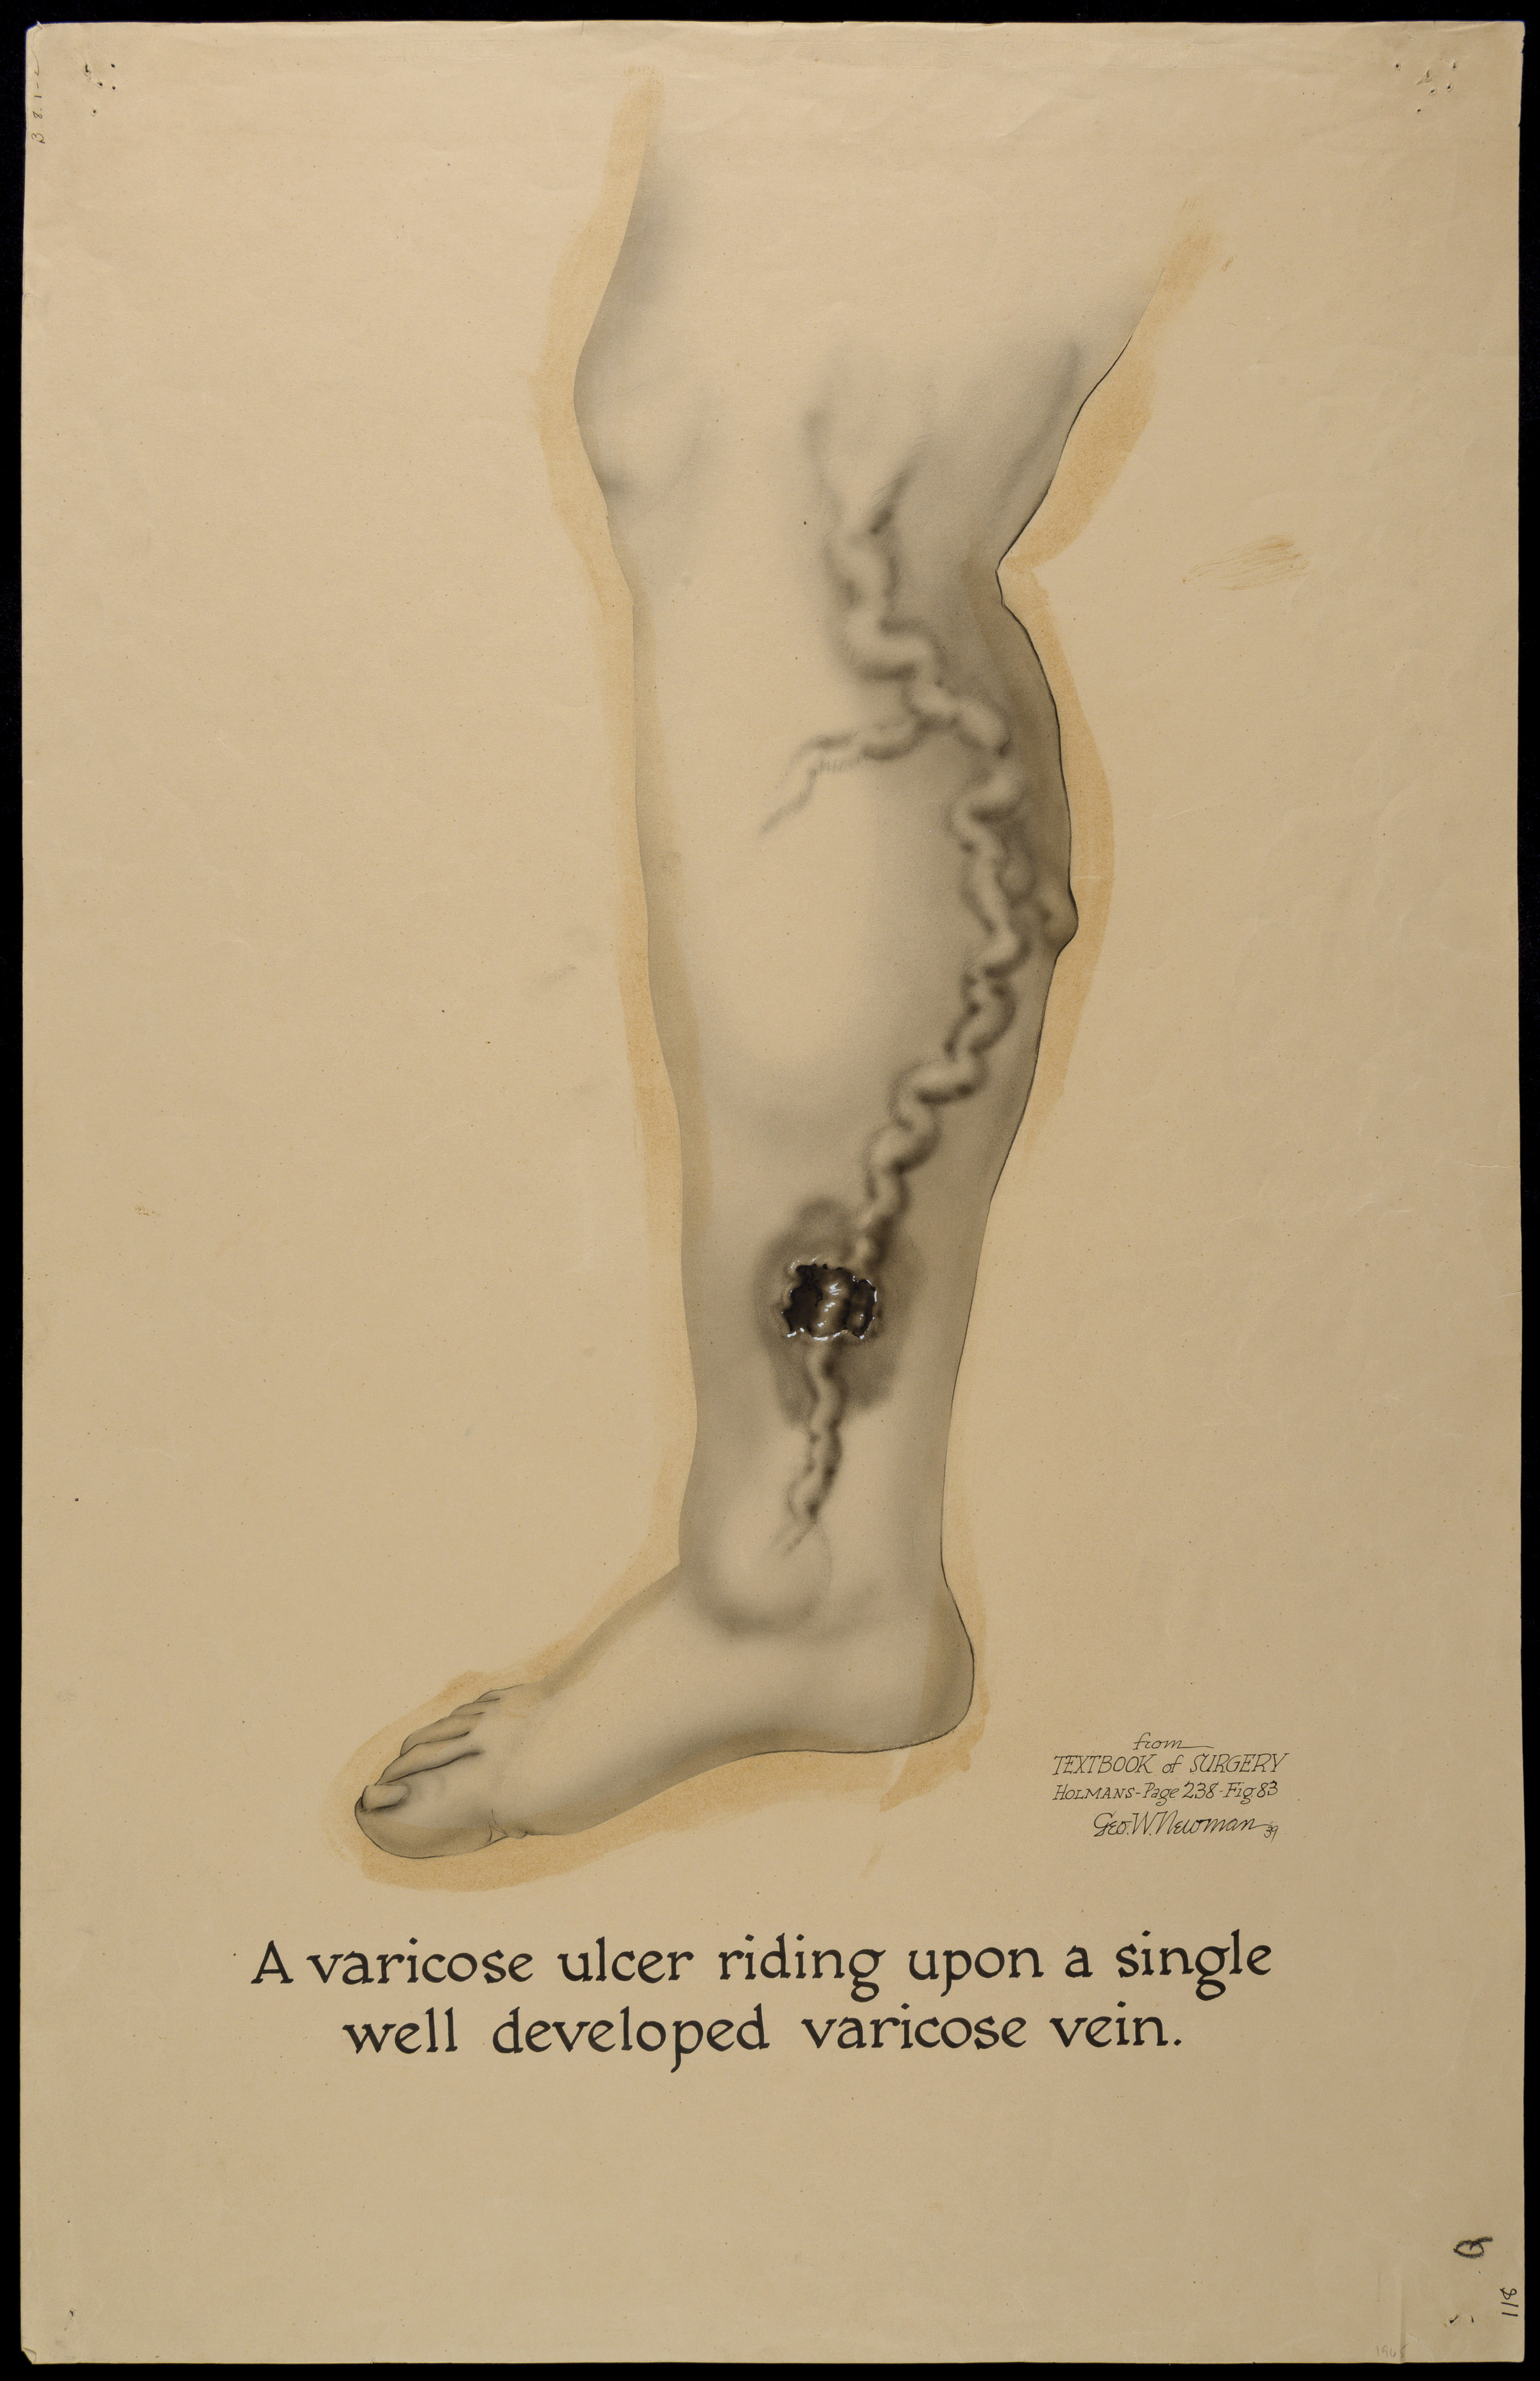 tratamente folclorice pentru stadiul iniial al varicozei cum la anesthety varicoza pe picioare